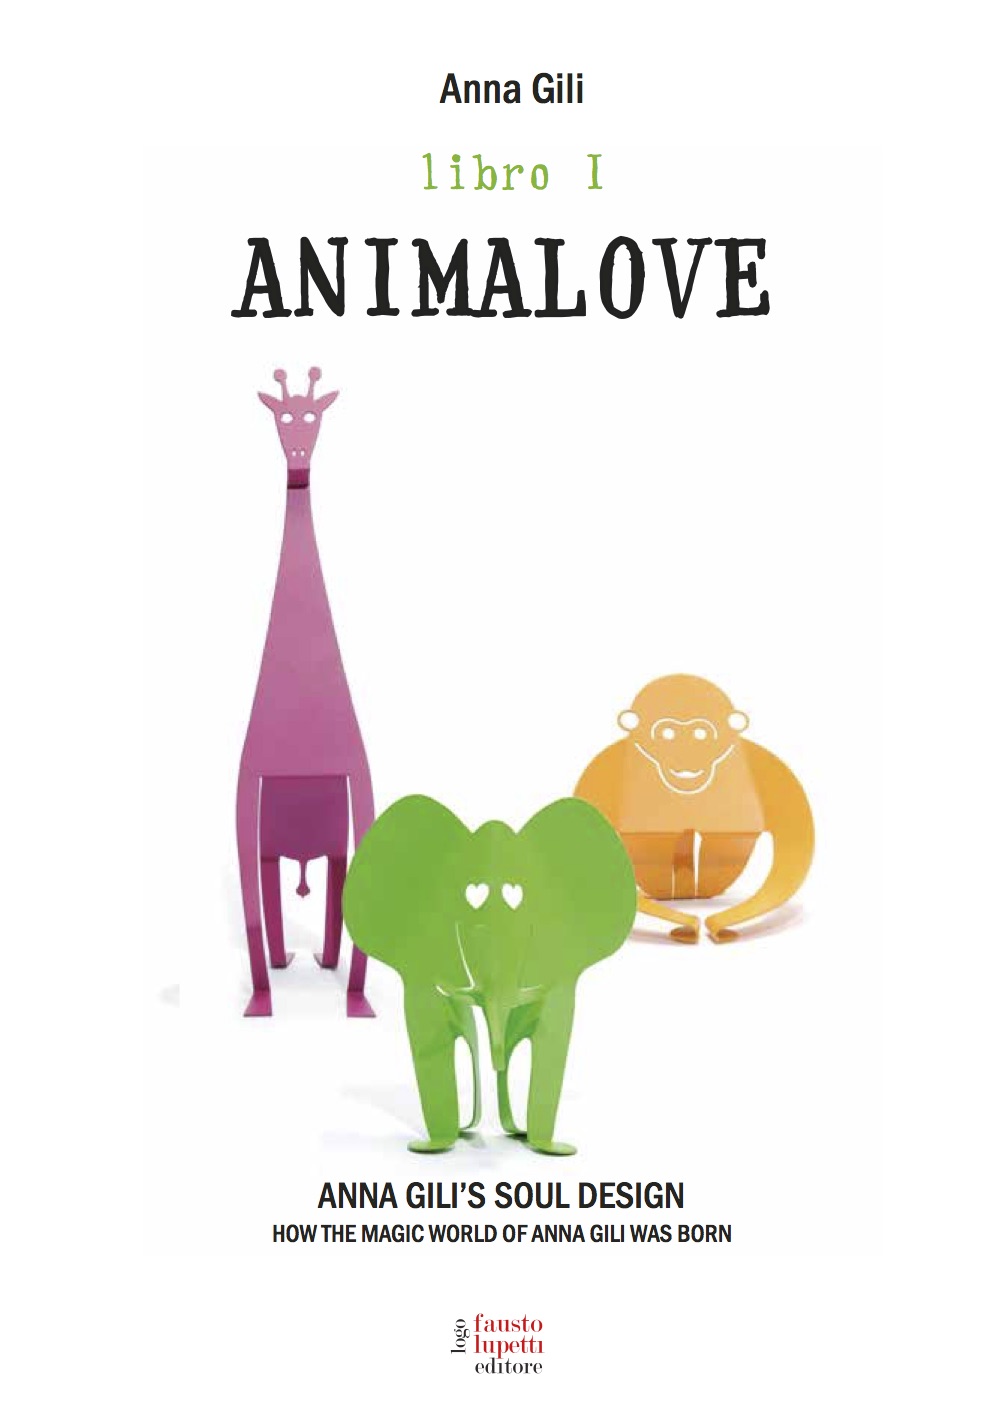 Anna Gili Book Animalove